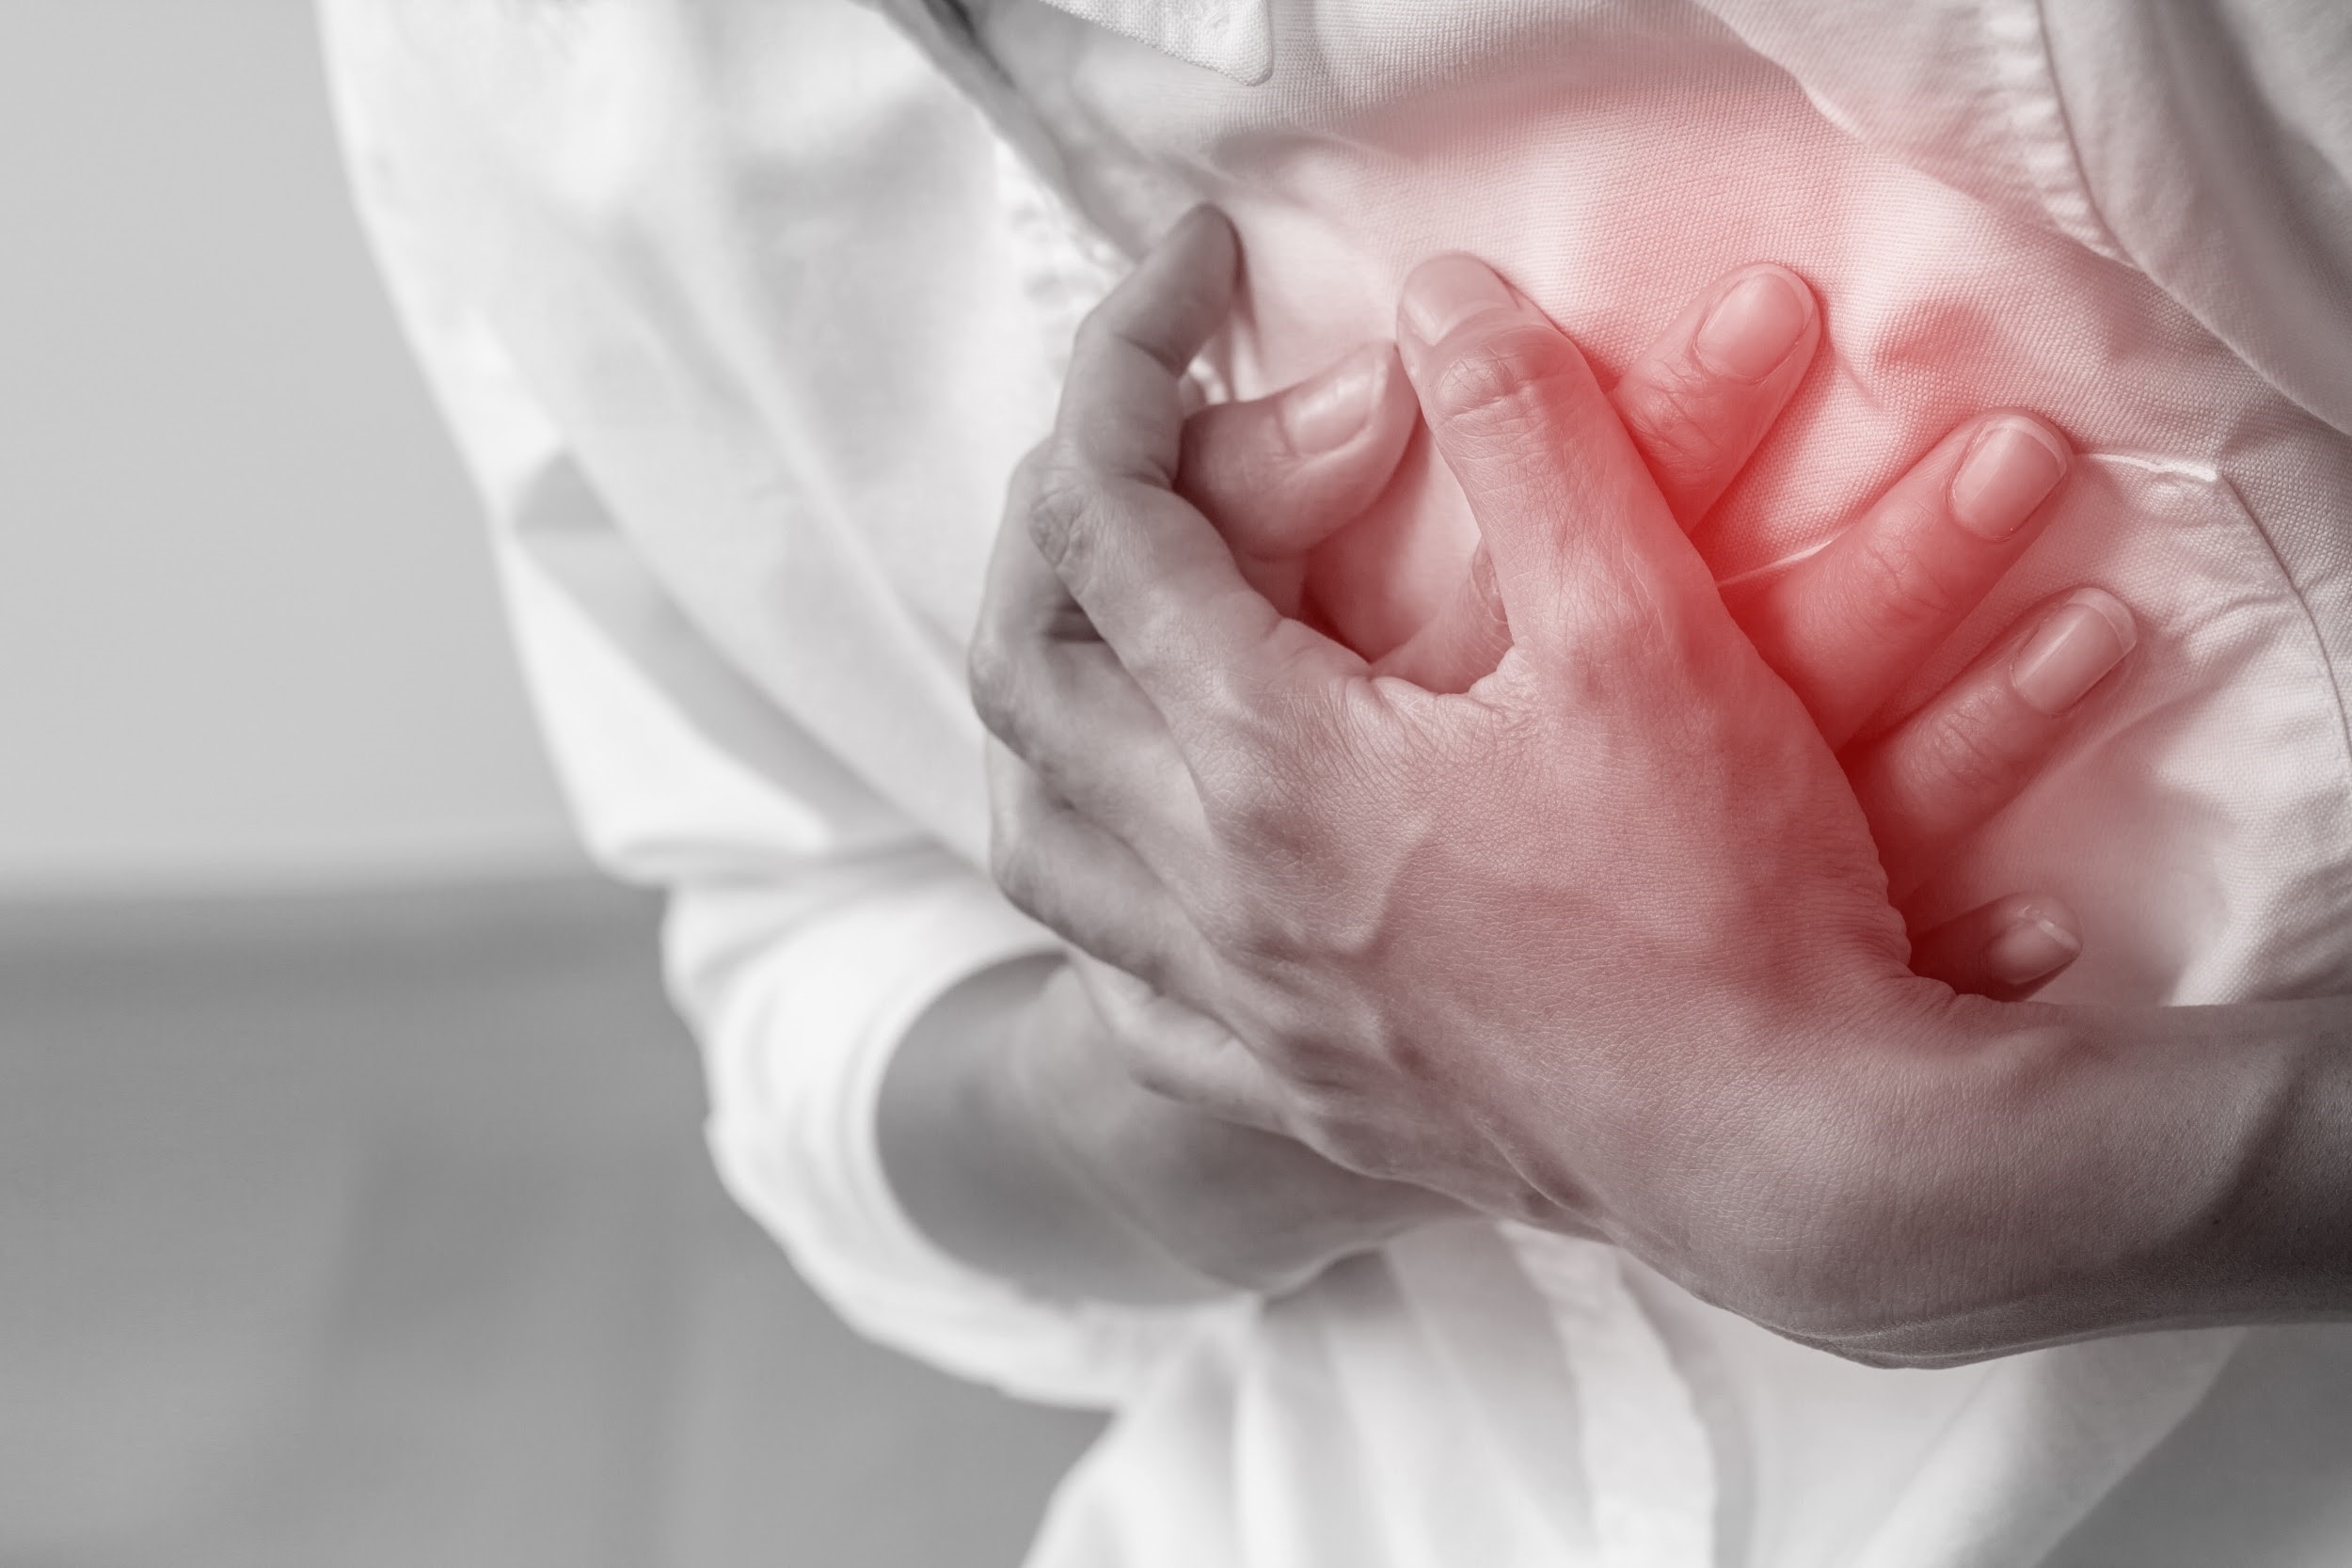 Nhồi máu cơ tim là bệnh tim mạch phổ biến ở người già.